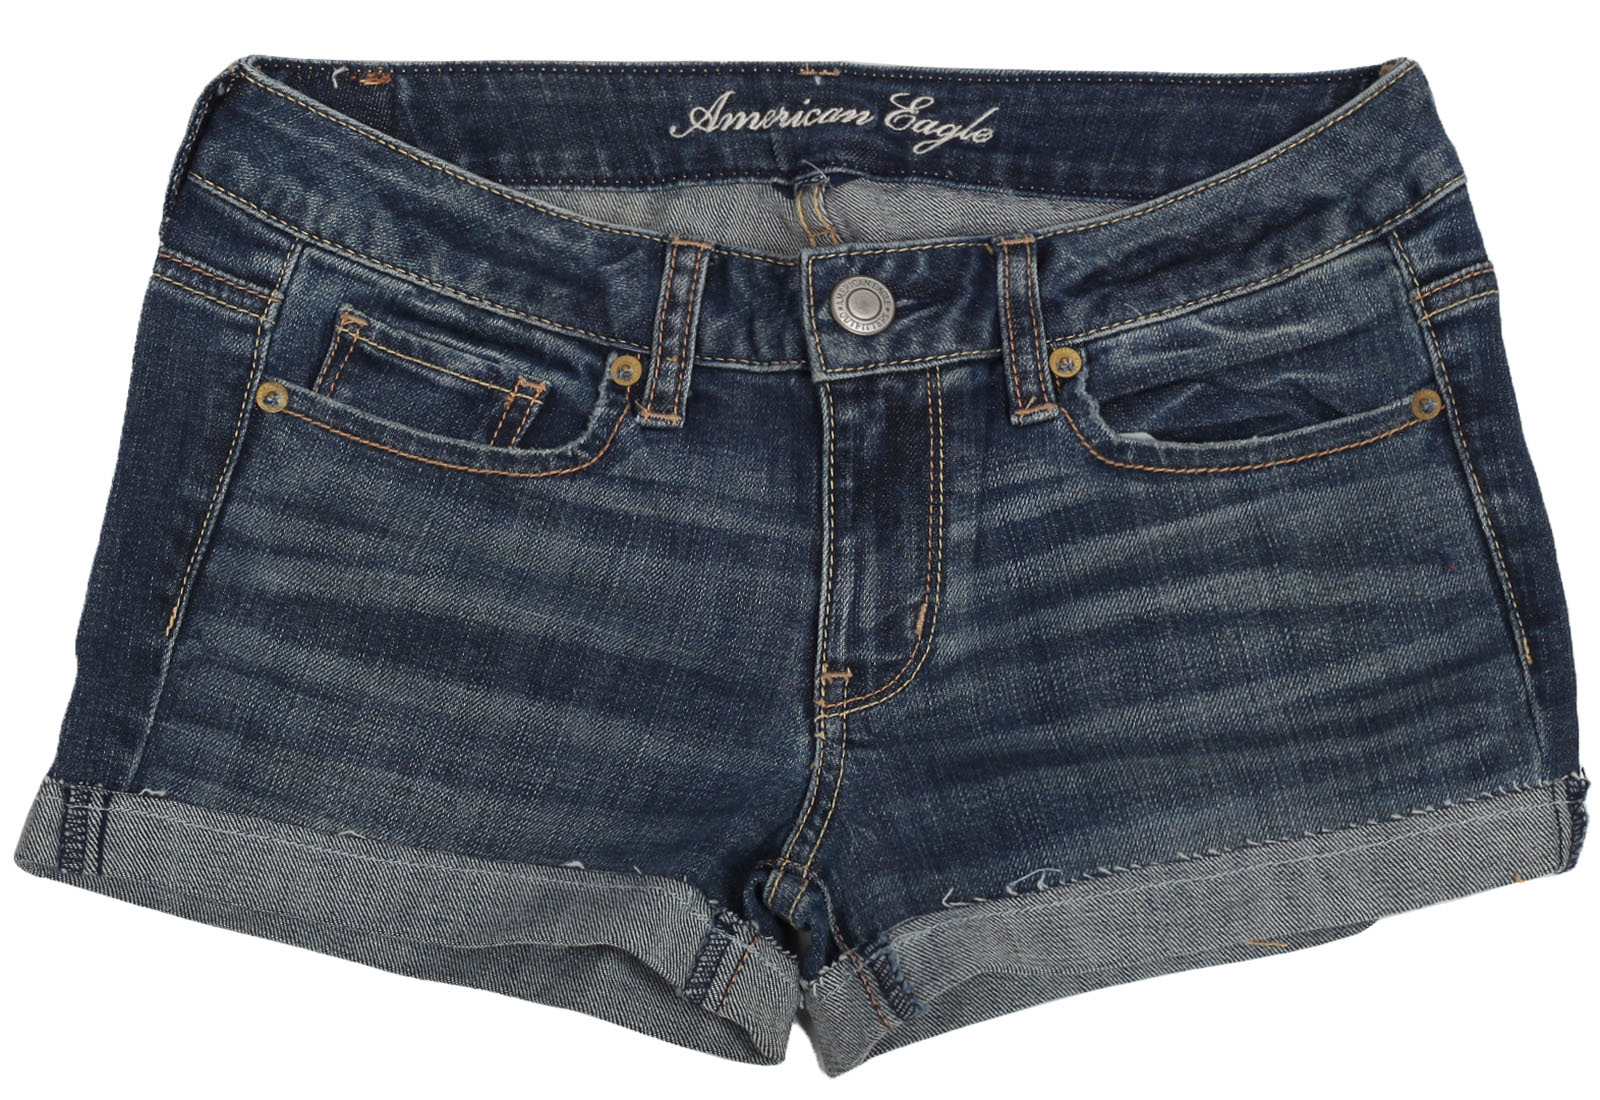 Практичные джинсовые шорты American Eagle для классных девчонок. Модель в "облипку" сделает тебя неотразимой! №337